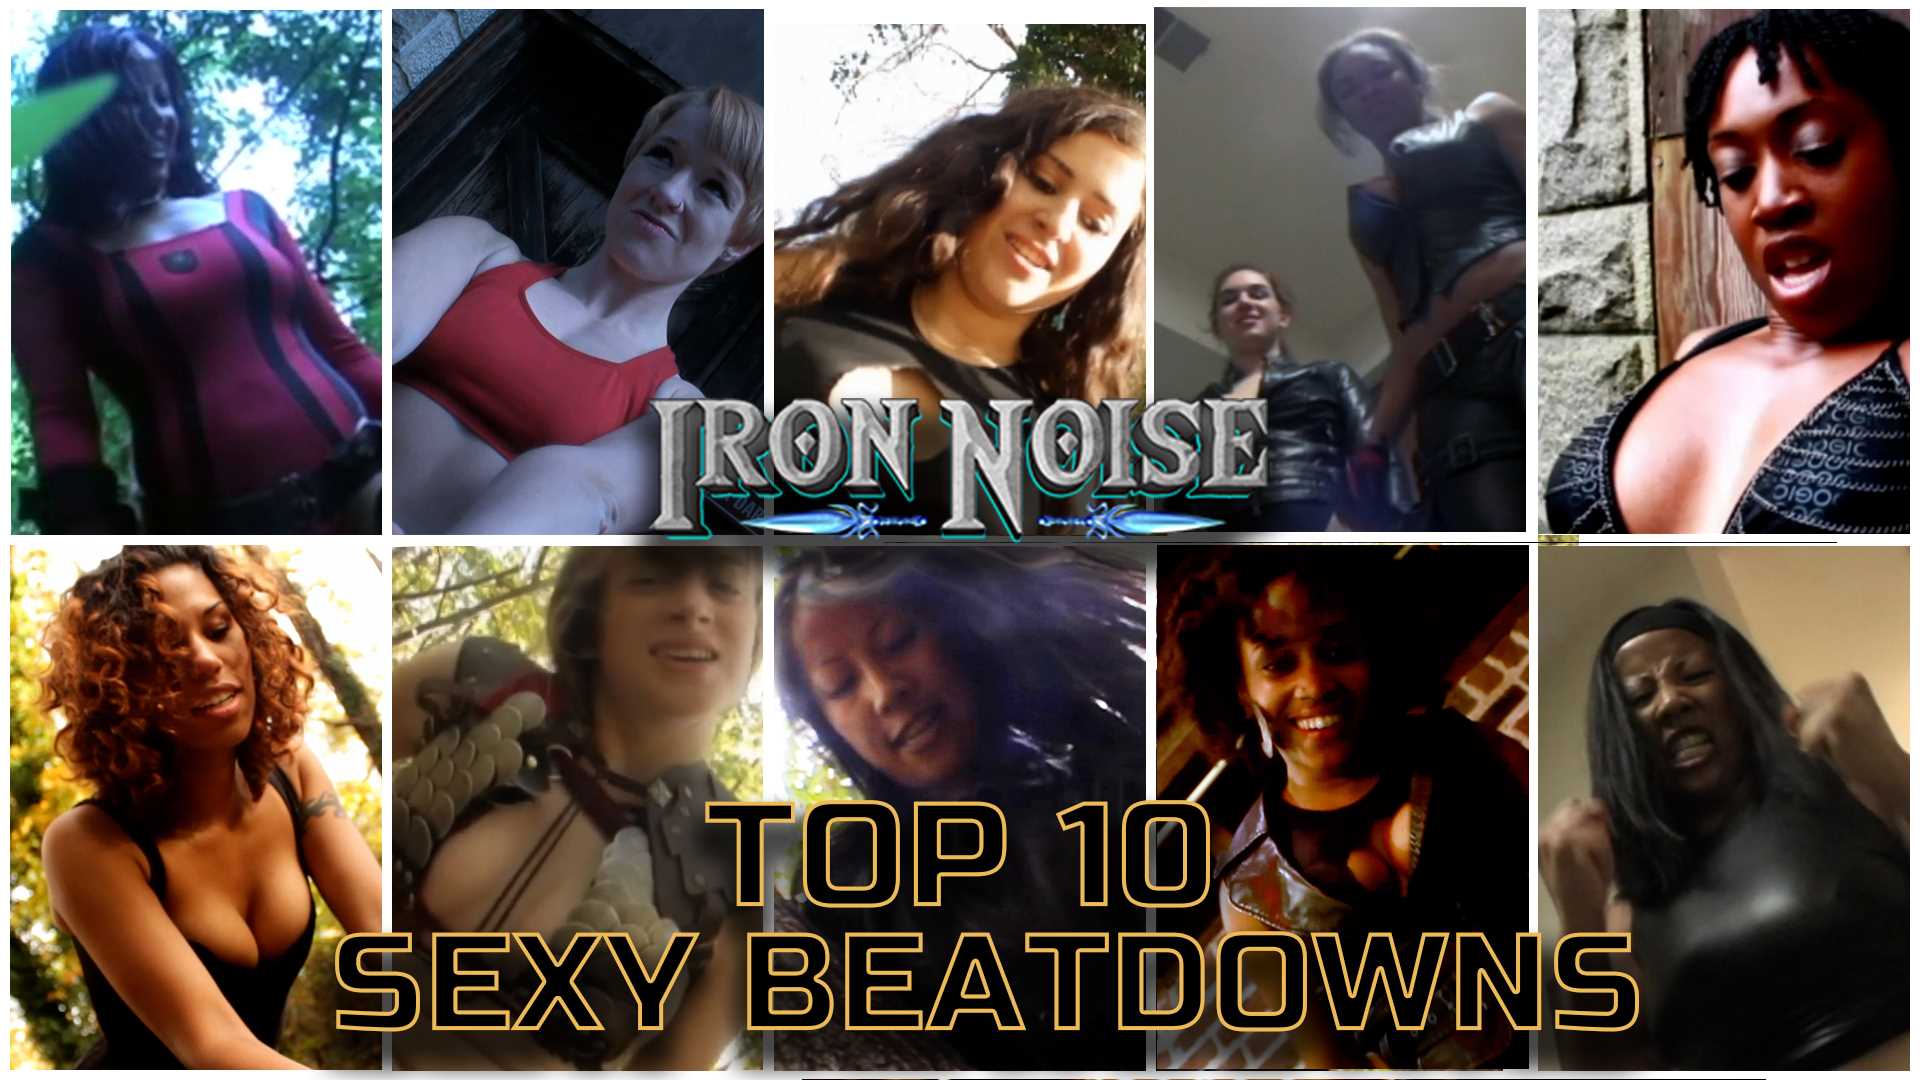 Iron Noise | IronNoise | IRONNOISE TOP TEN